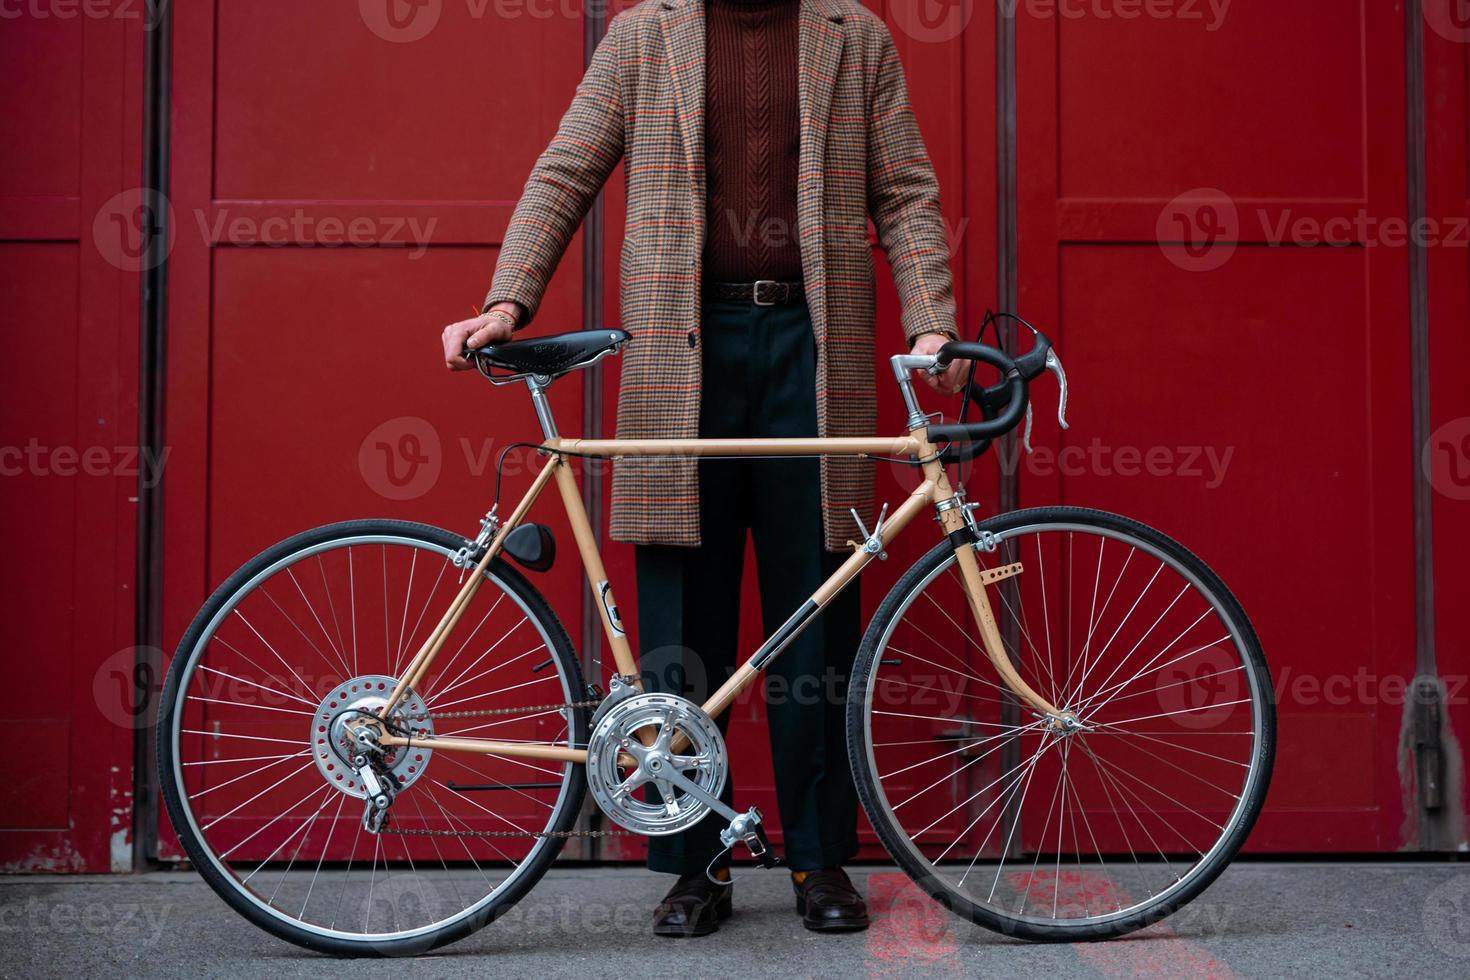 jovem empresário com bicicleta sobre fundo de parede vermelha em uma cidade. fundo de cor vermelha foto